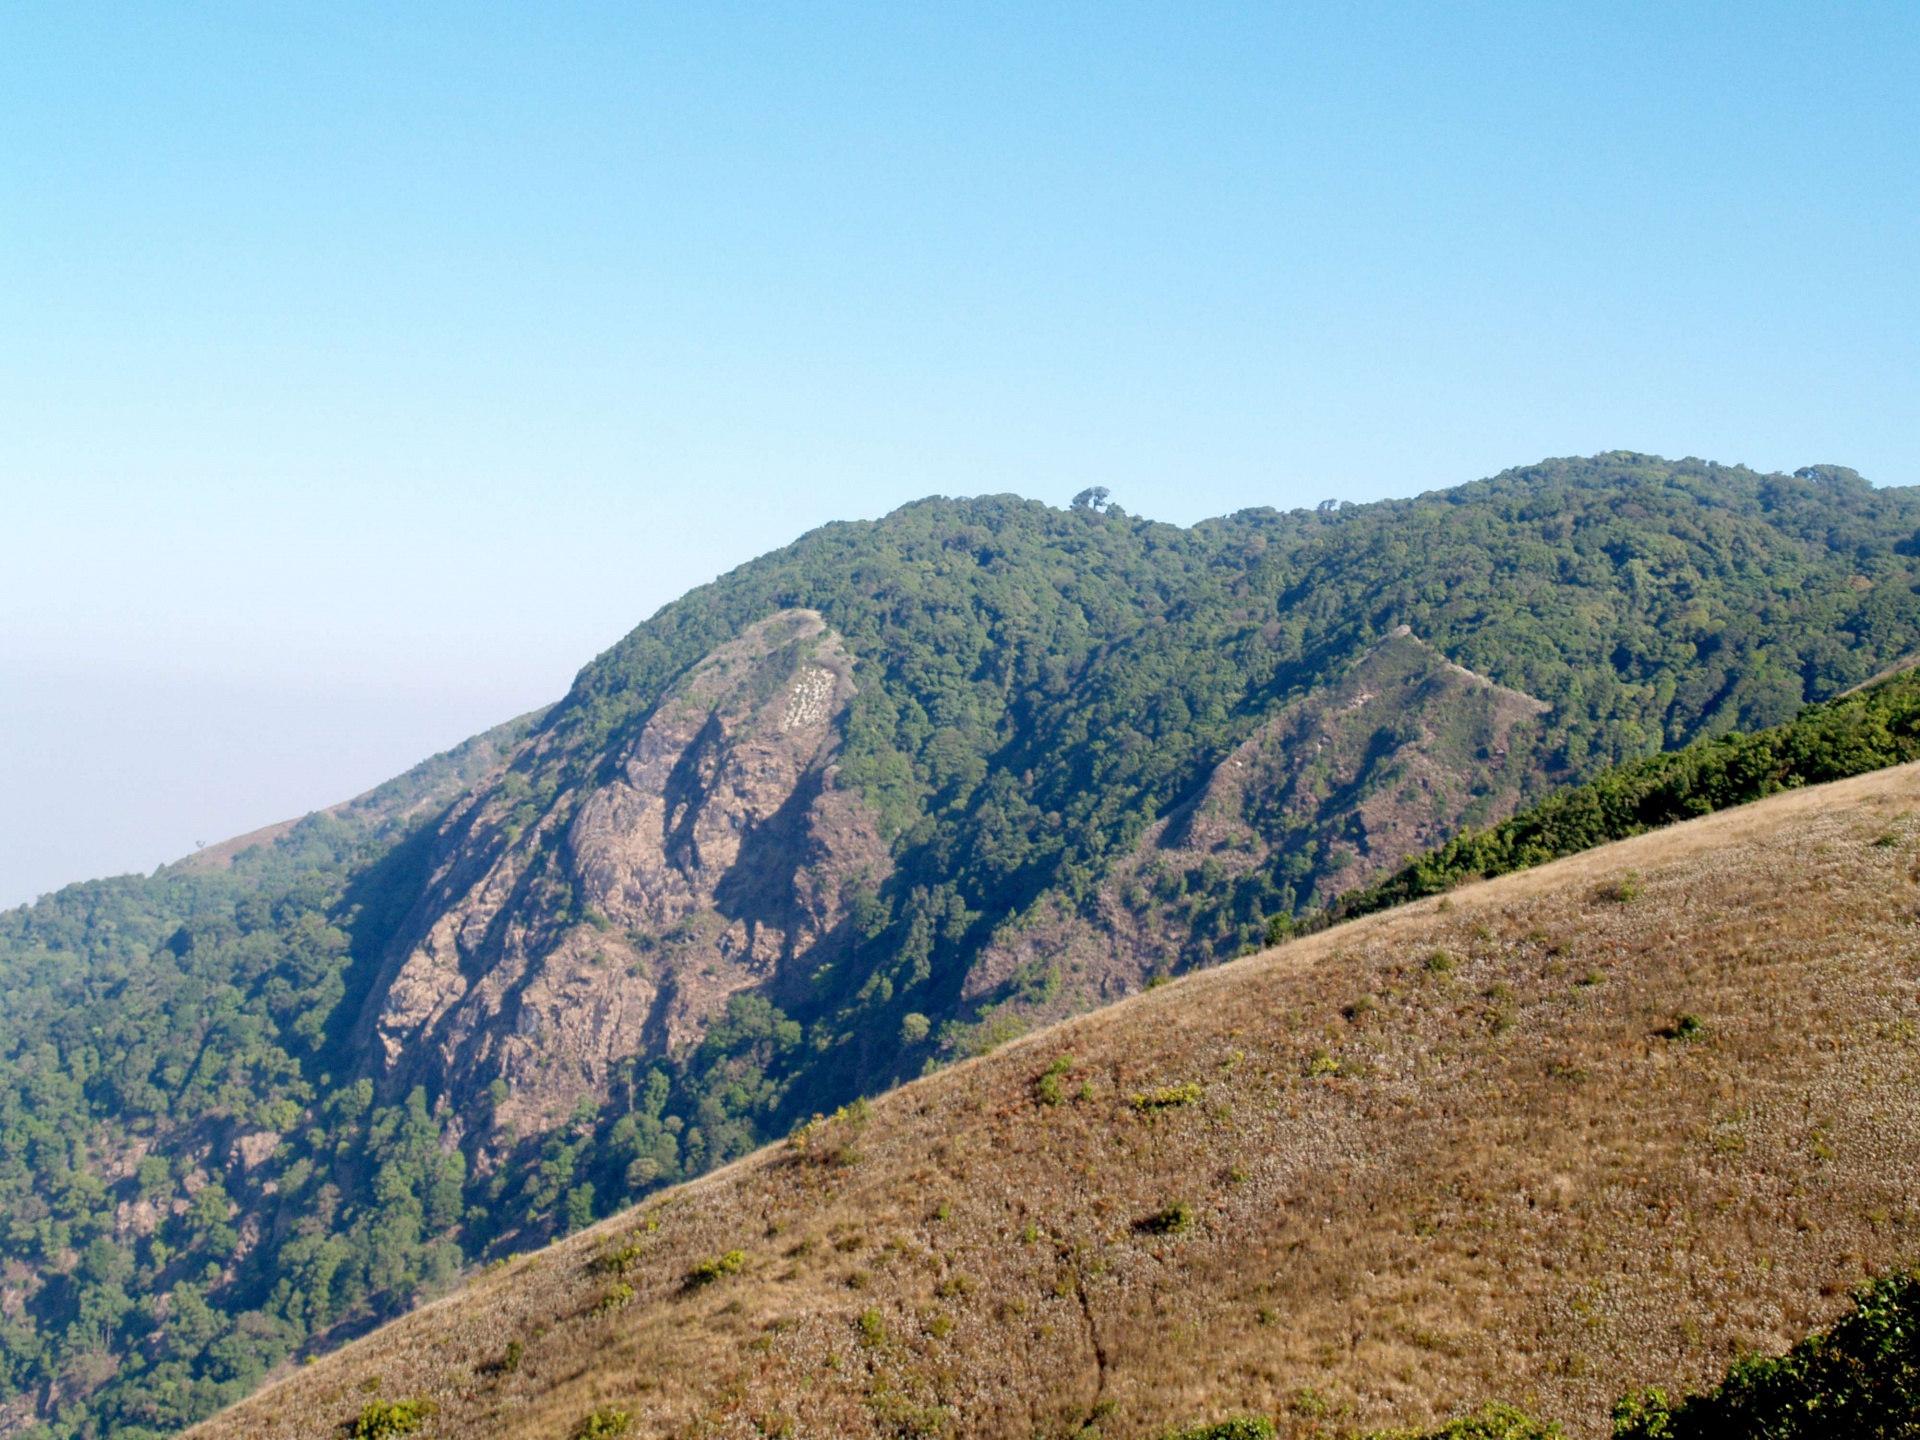 Berg, doi inthanon nationaal park